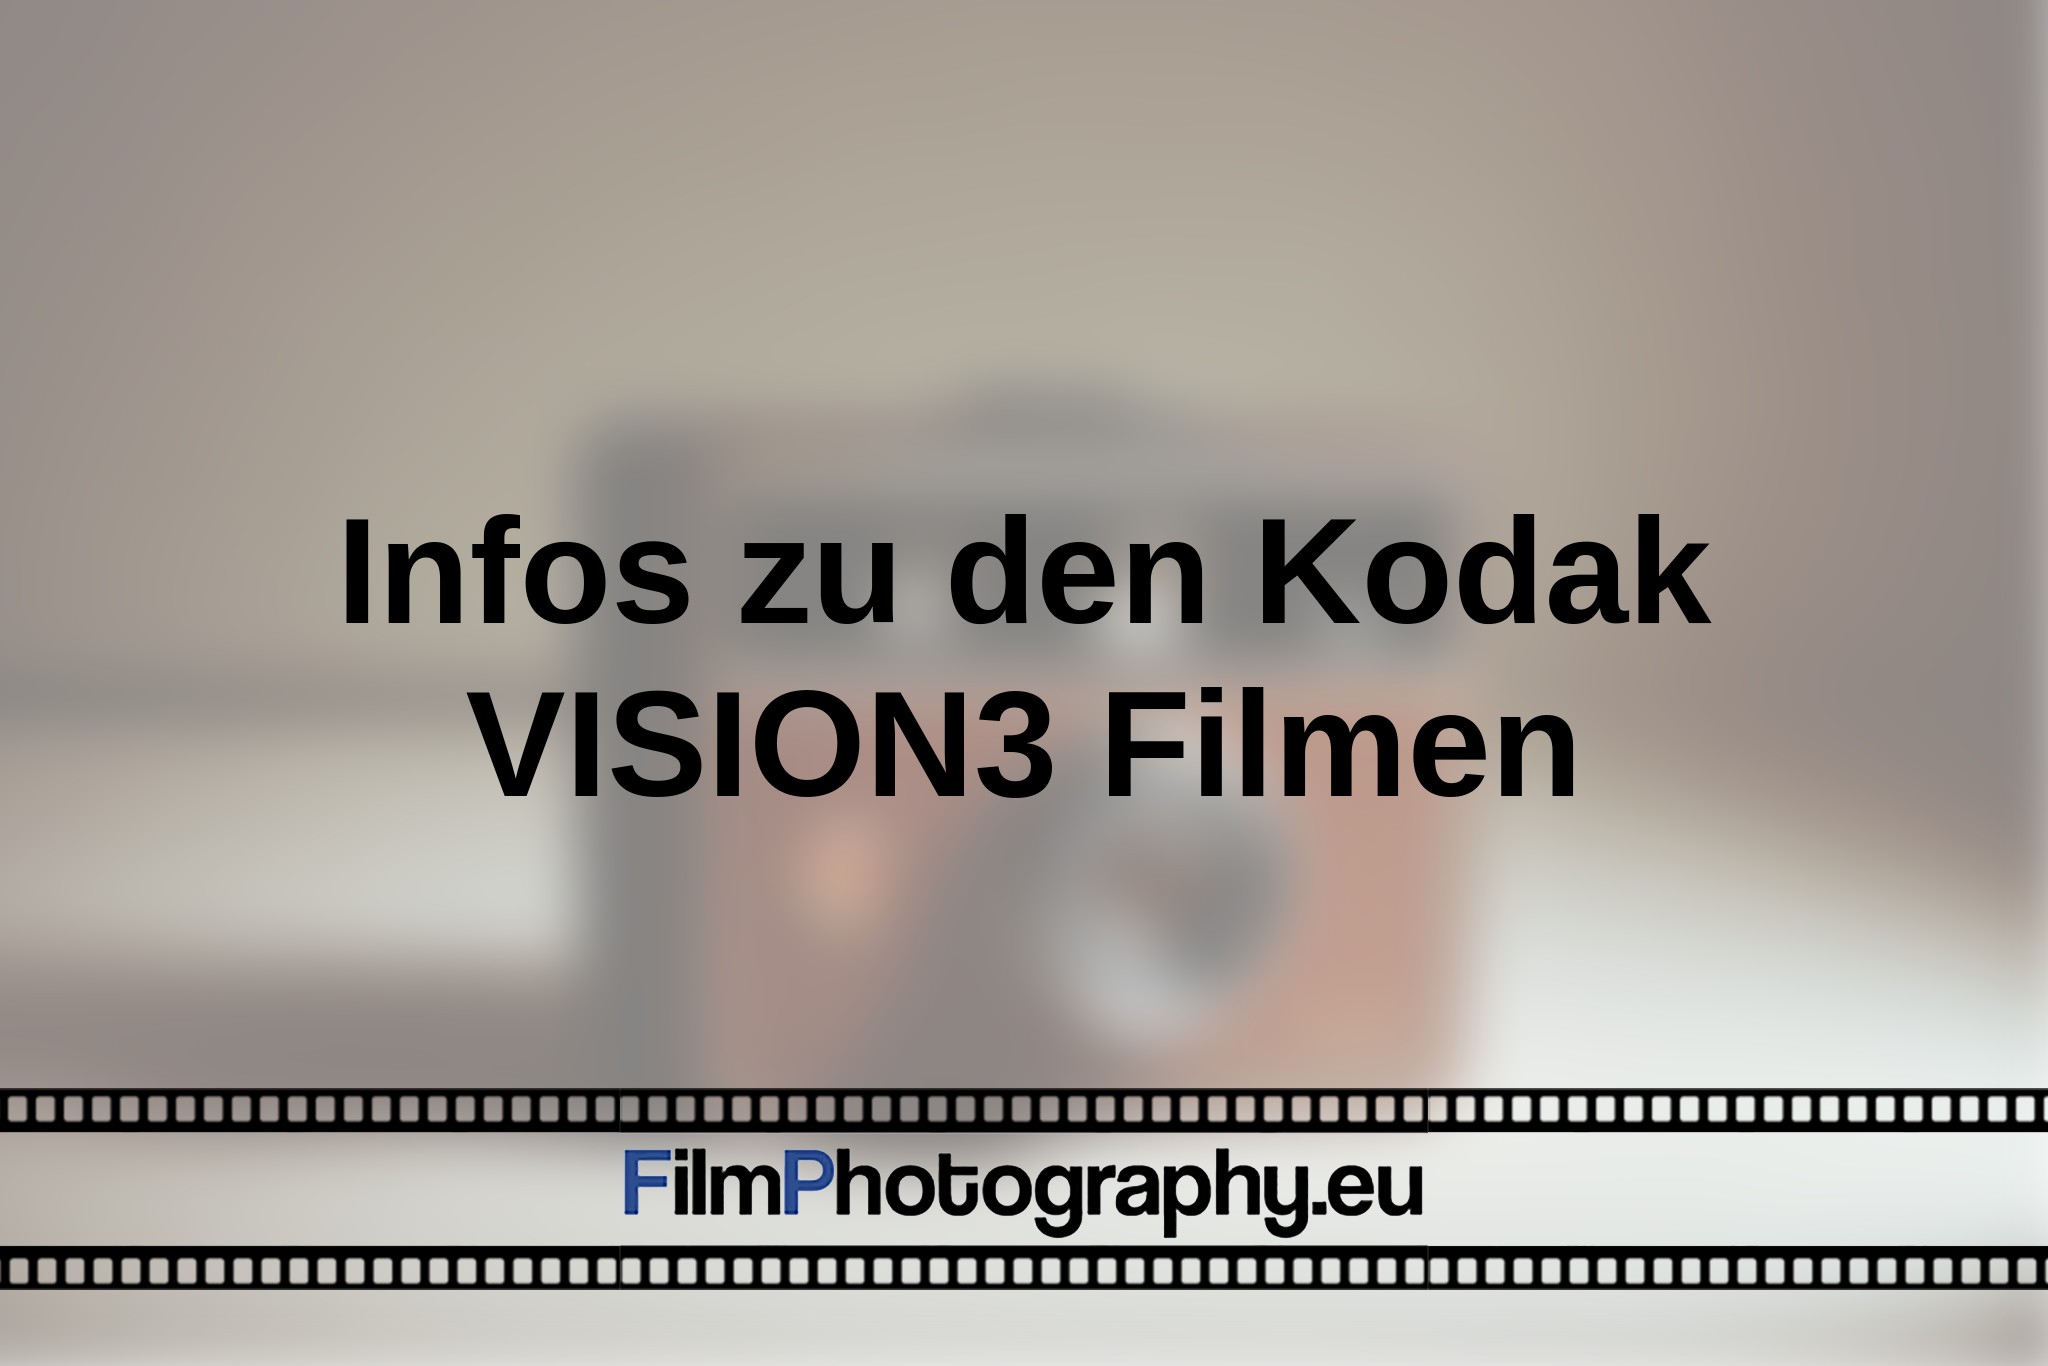 infos-zu-den-kodak-vision3-filmen-bnv.jpg